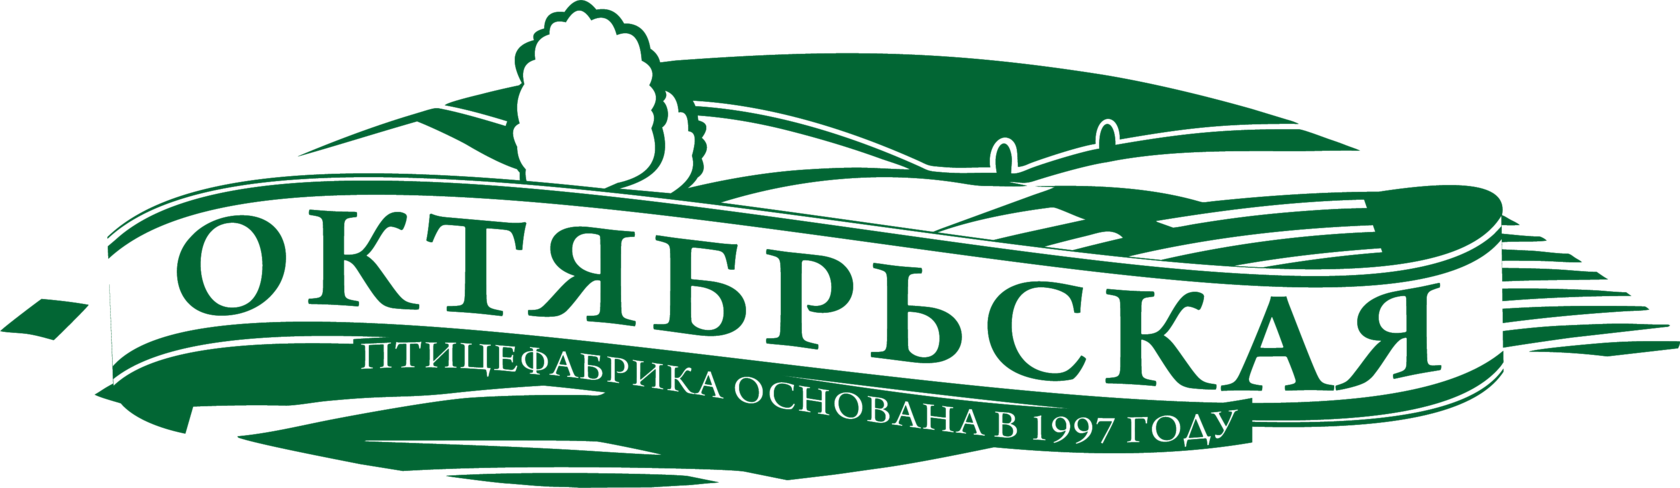 Группа компаний птицефабрика "Октябрьская"